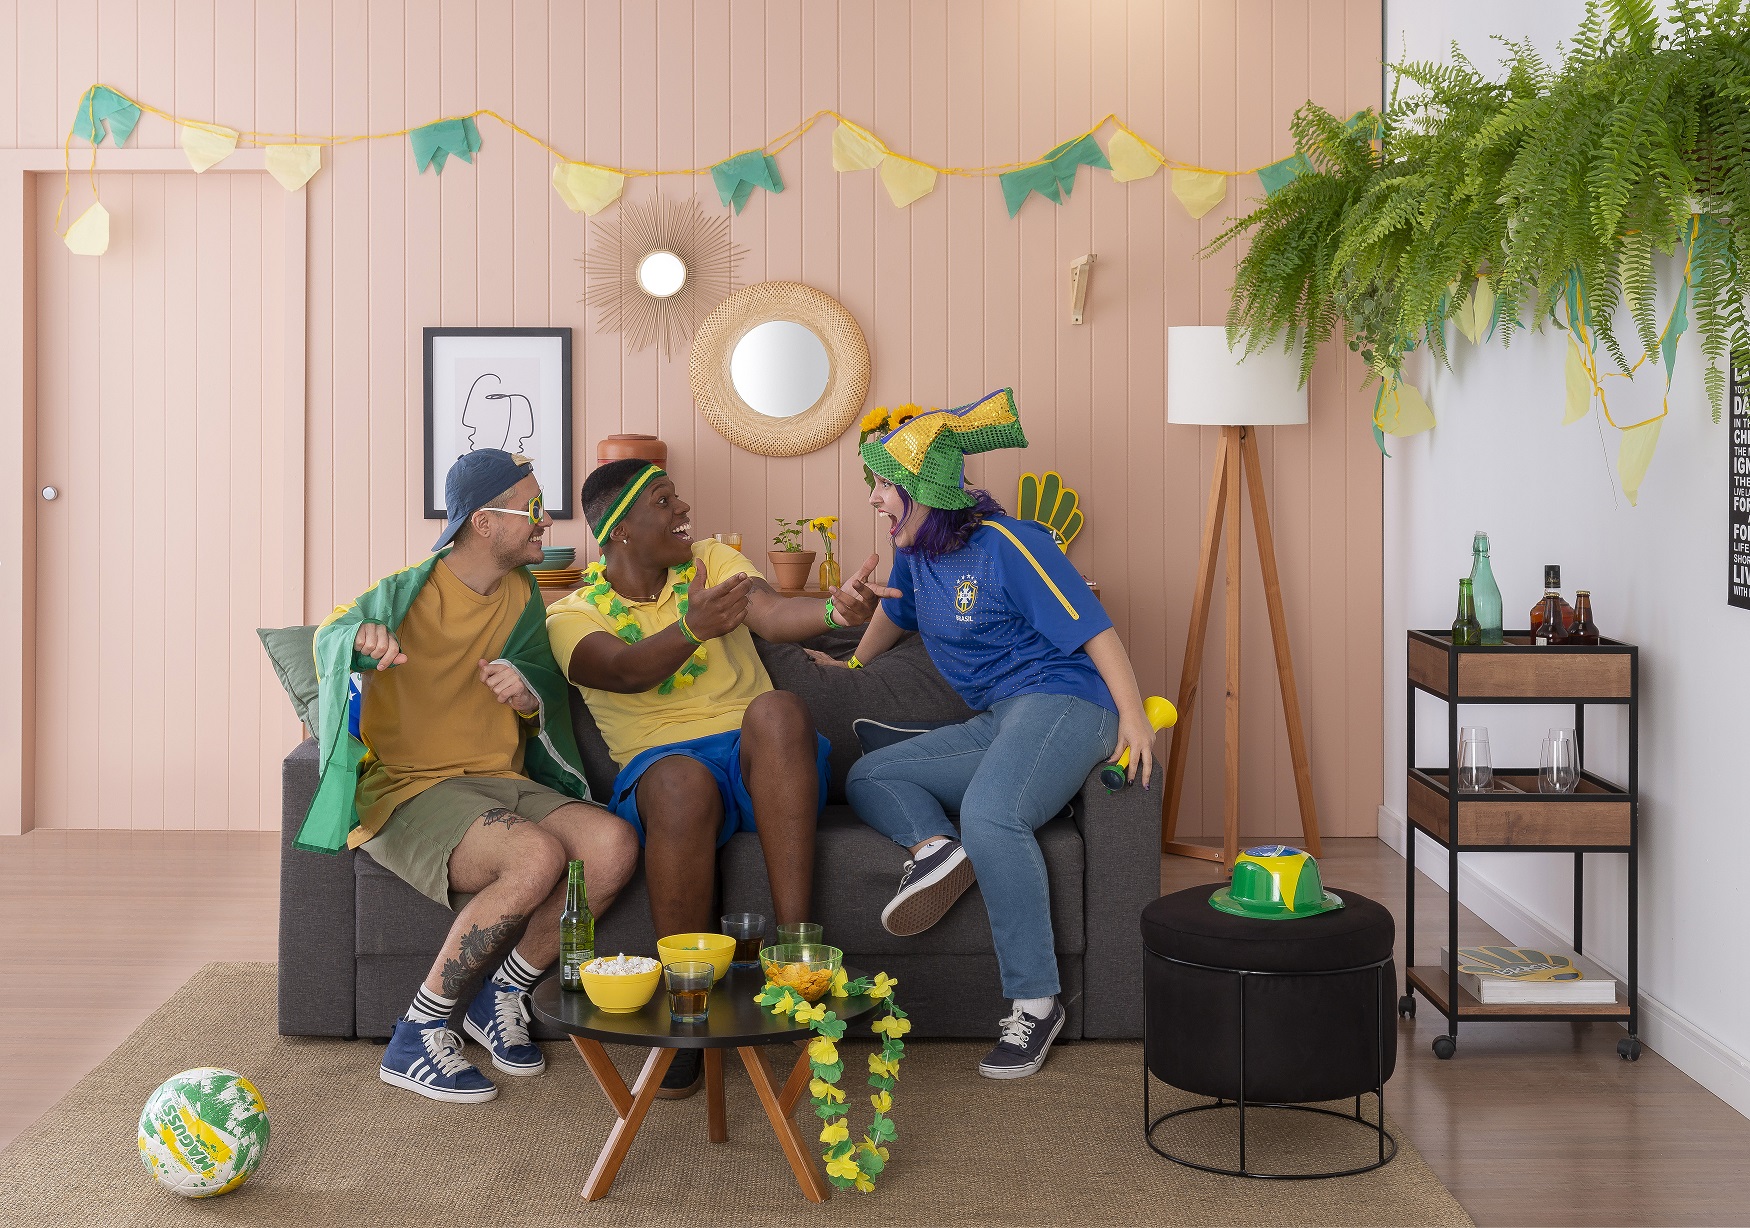 Festa Copa do Mundo: 7 ideias para decorar (e animar) a casa | Mobly